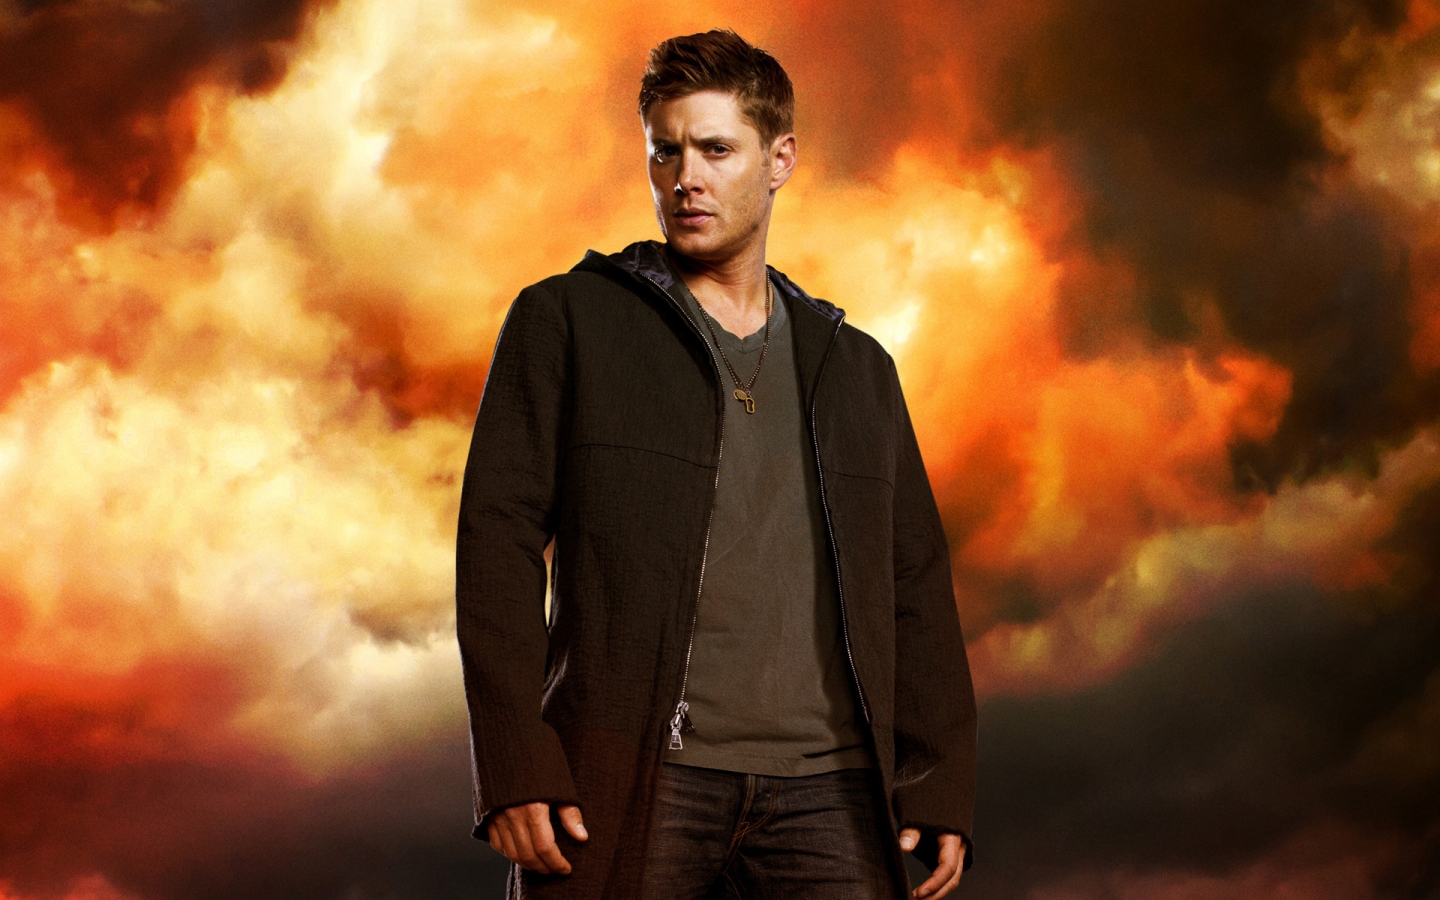 Supernatural Dean Winchester for 1440 x 900 widescreen resolution